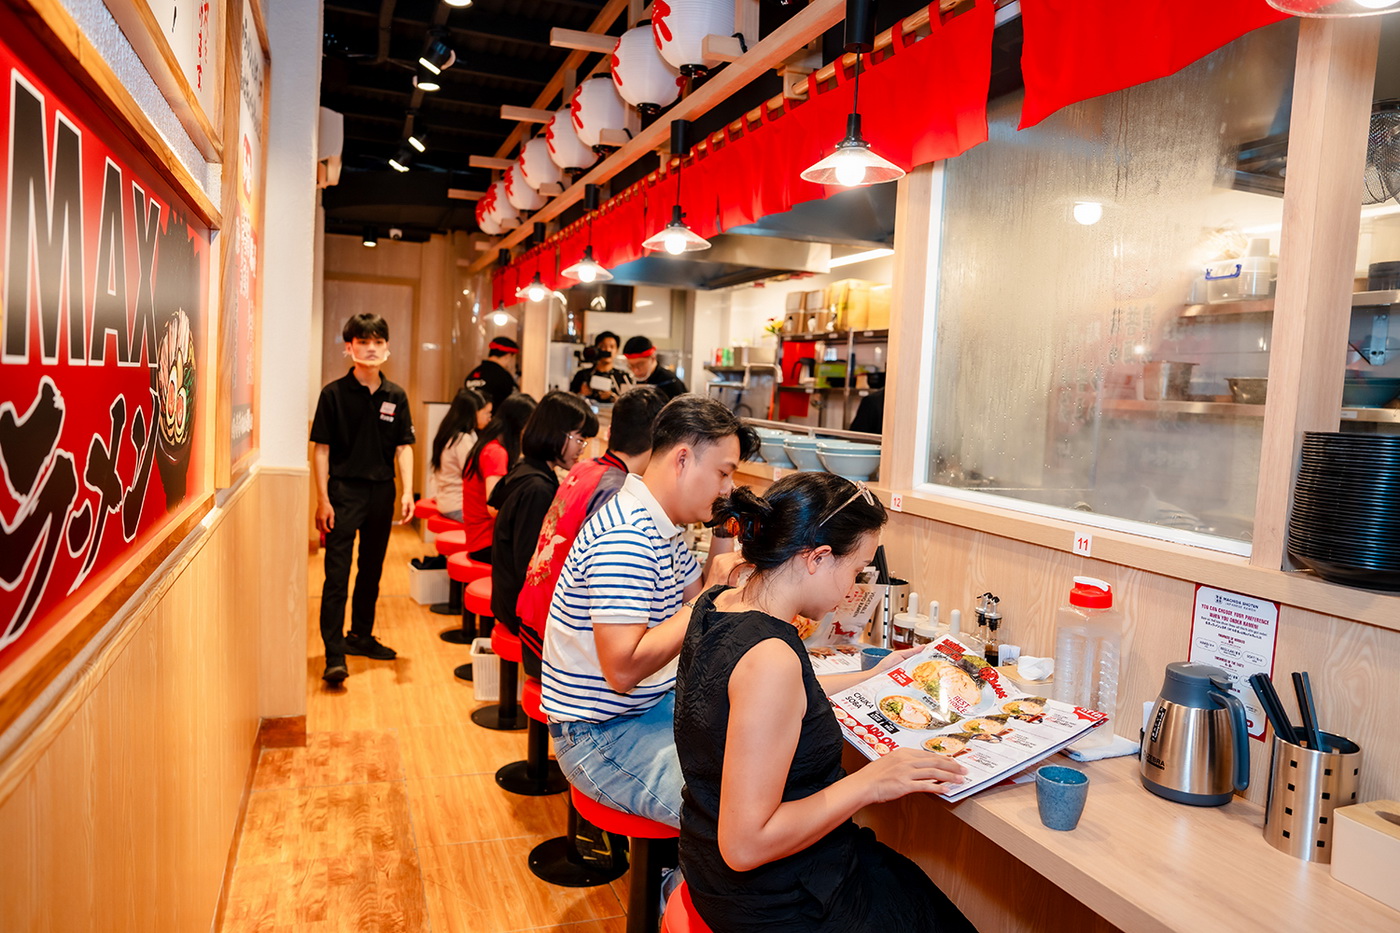 Vì tọa lạc tại vị trí đắc địa nên cửa hàng mới nhất này mở cửa tới 2h sáng vào thứ 7 và Chủ nhật hàng tuần, nhằm phục vụ nhu cầu tận hưởng bữa ăn đêm chất lượng cho thực khách tại khu lõi trung tâm Sài Gòn